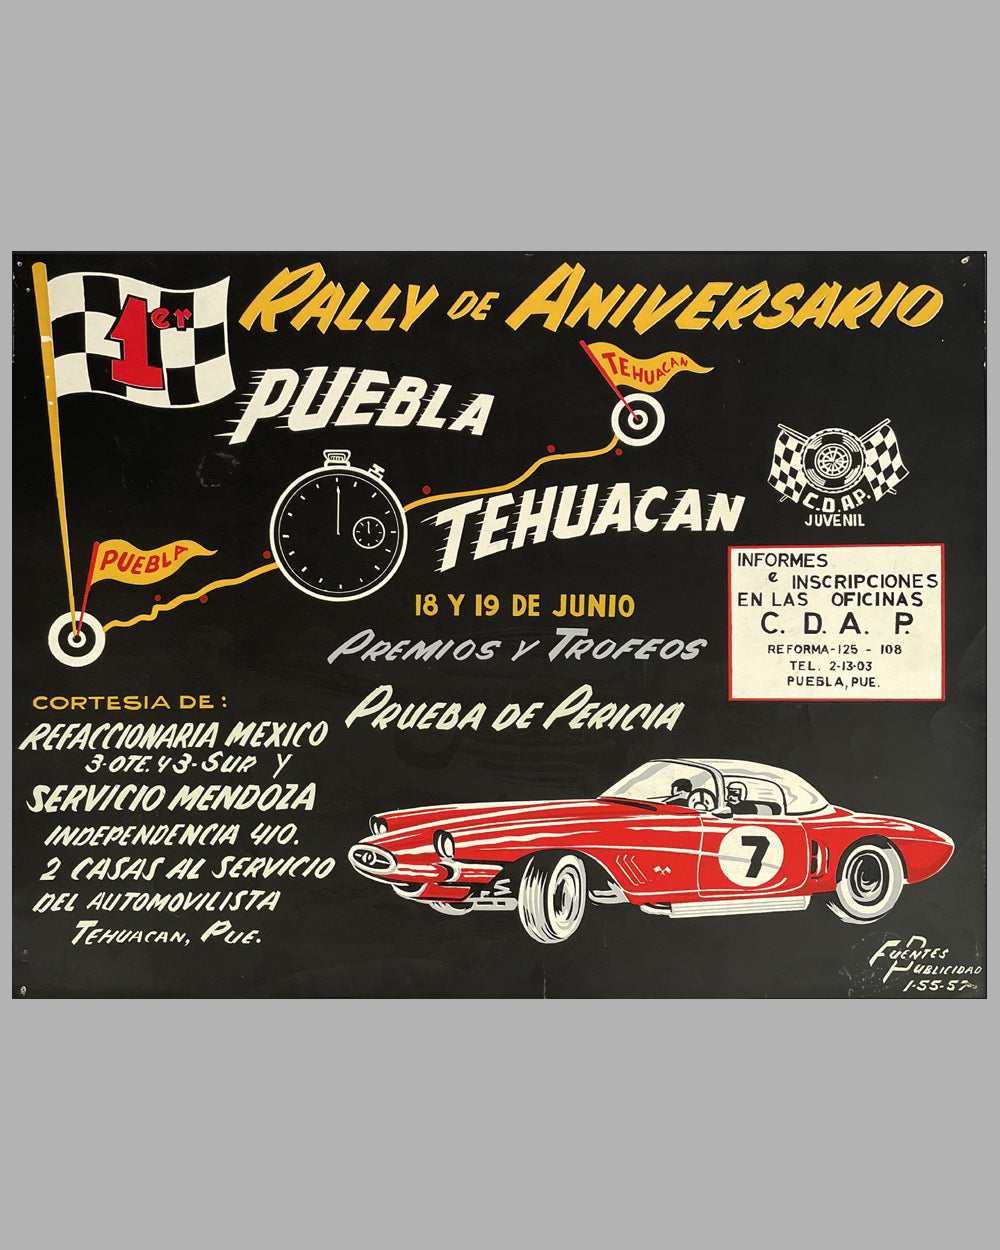 Rally de Aniversario from Puebla to Tehuacan silk screen poster, 1955